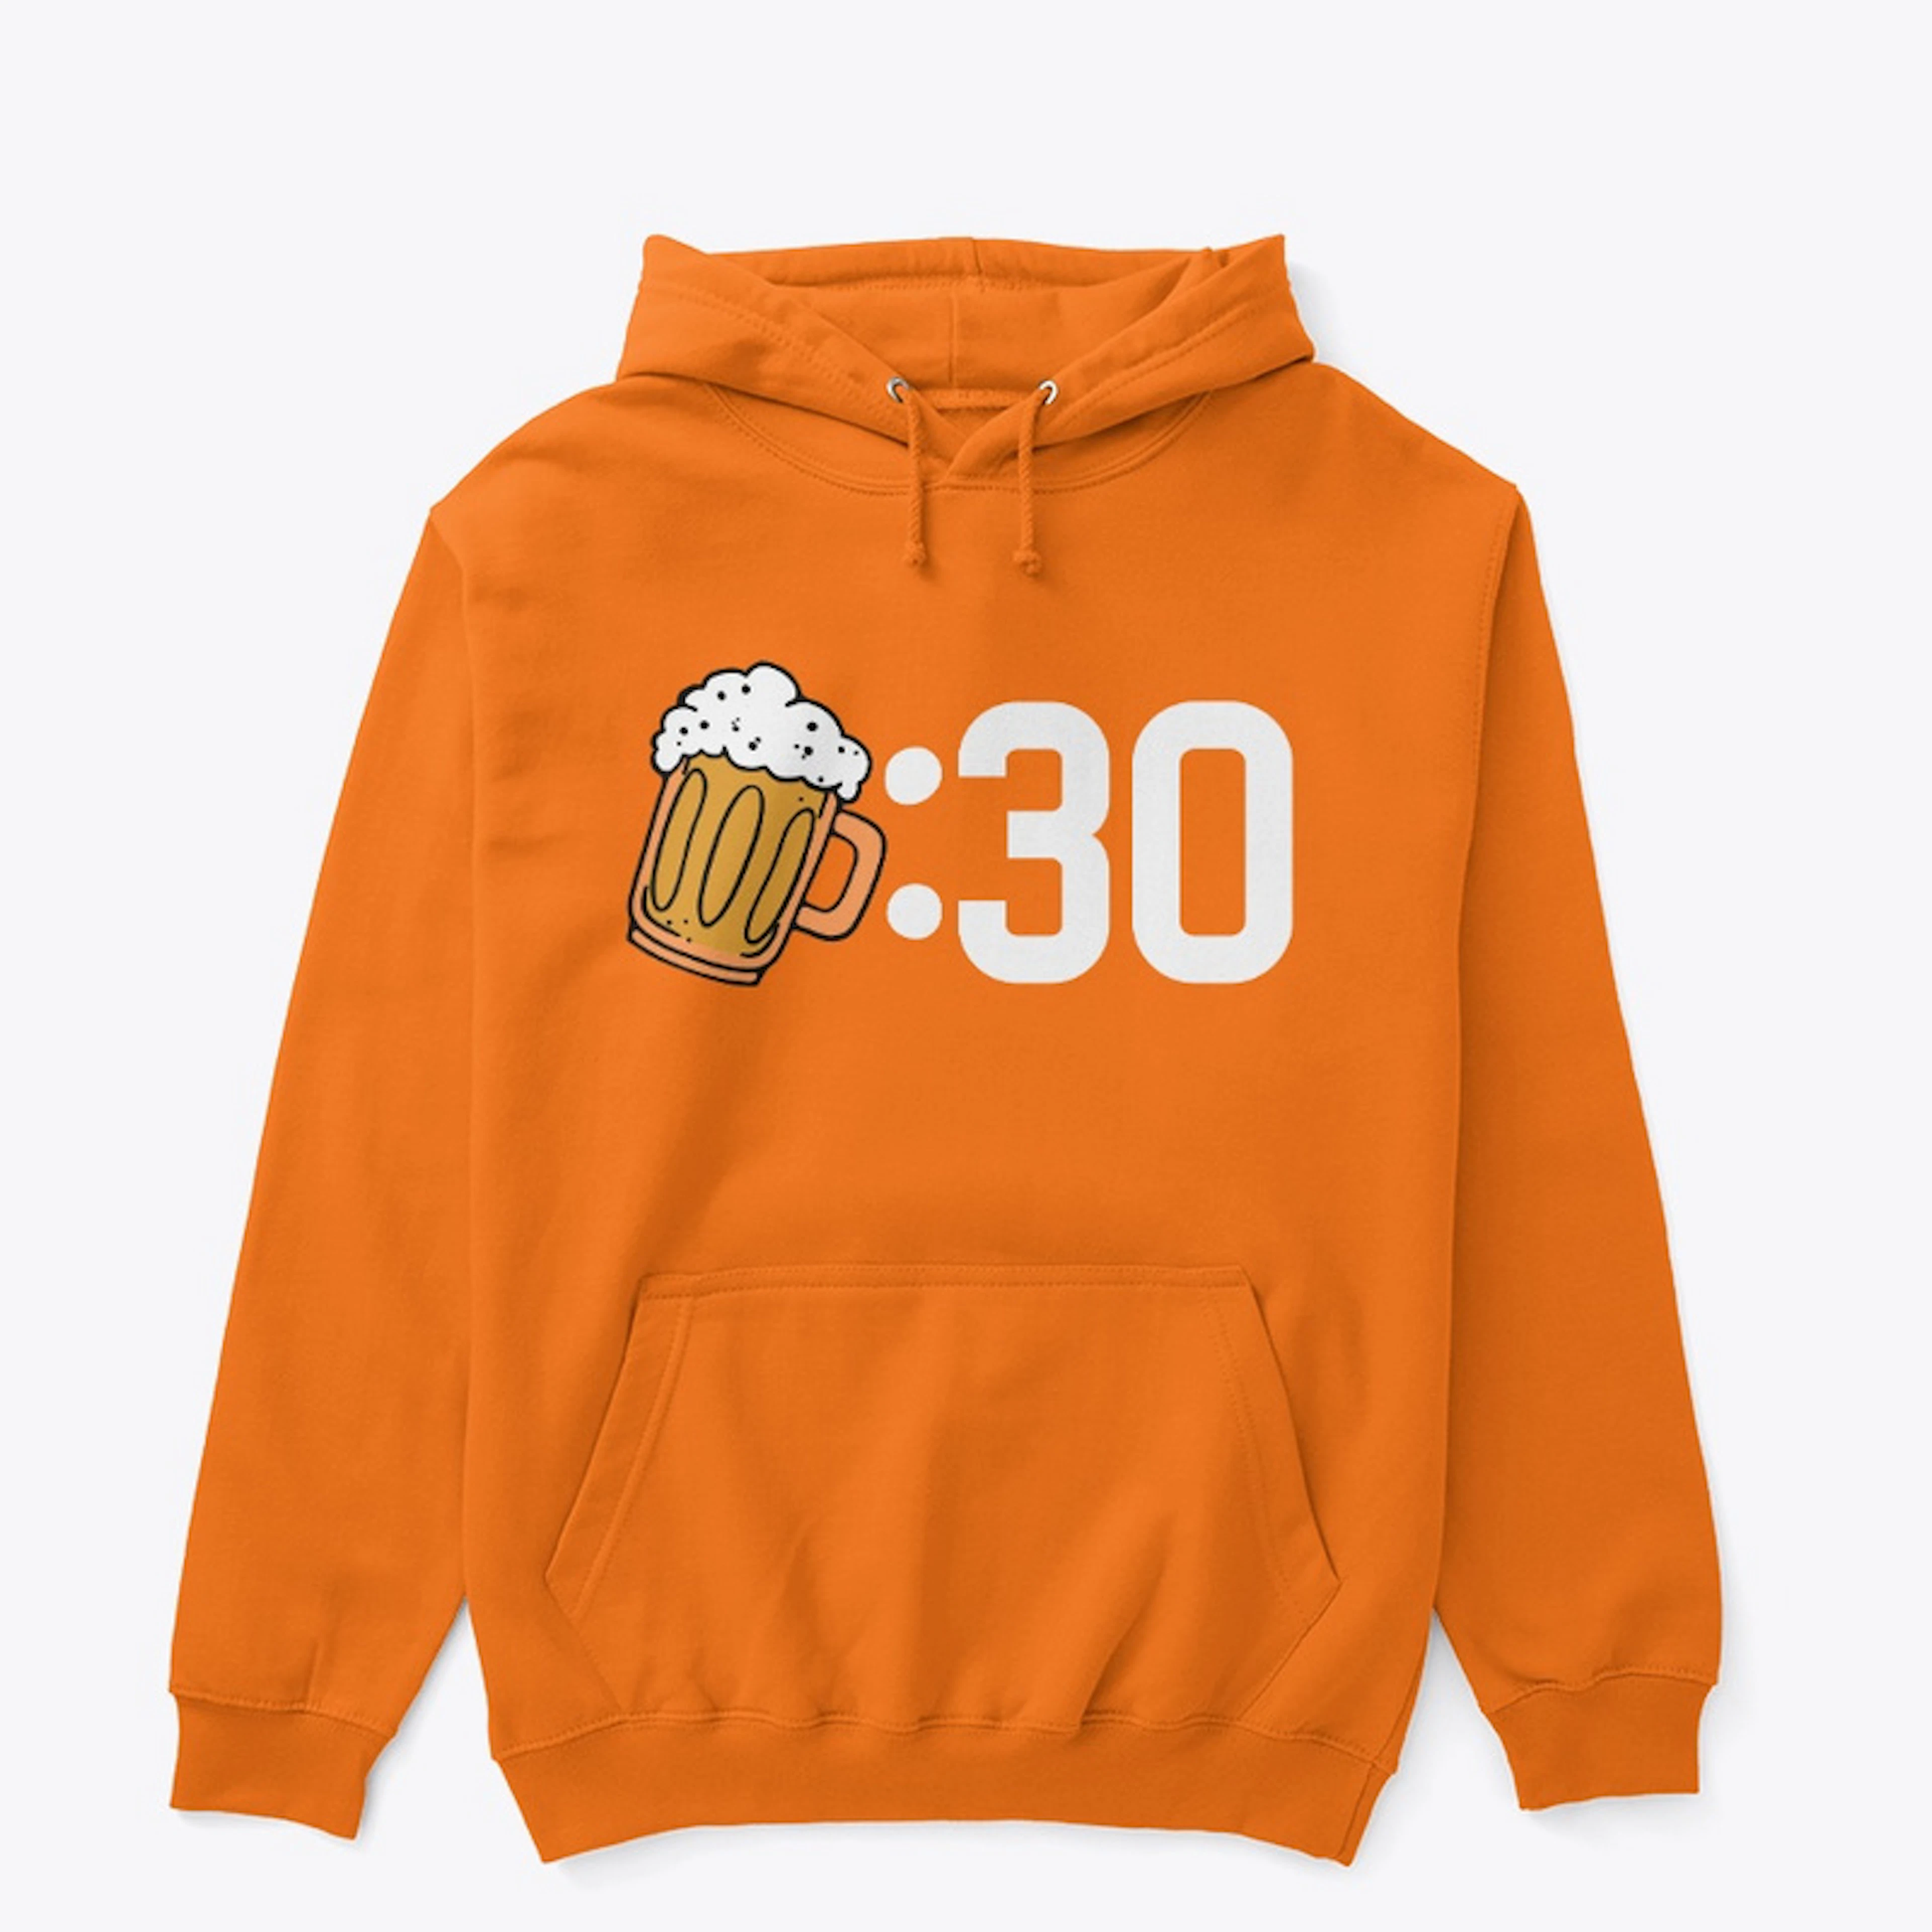 Beer:30